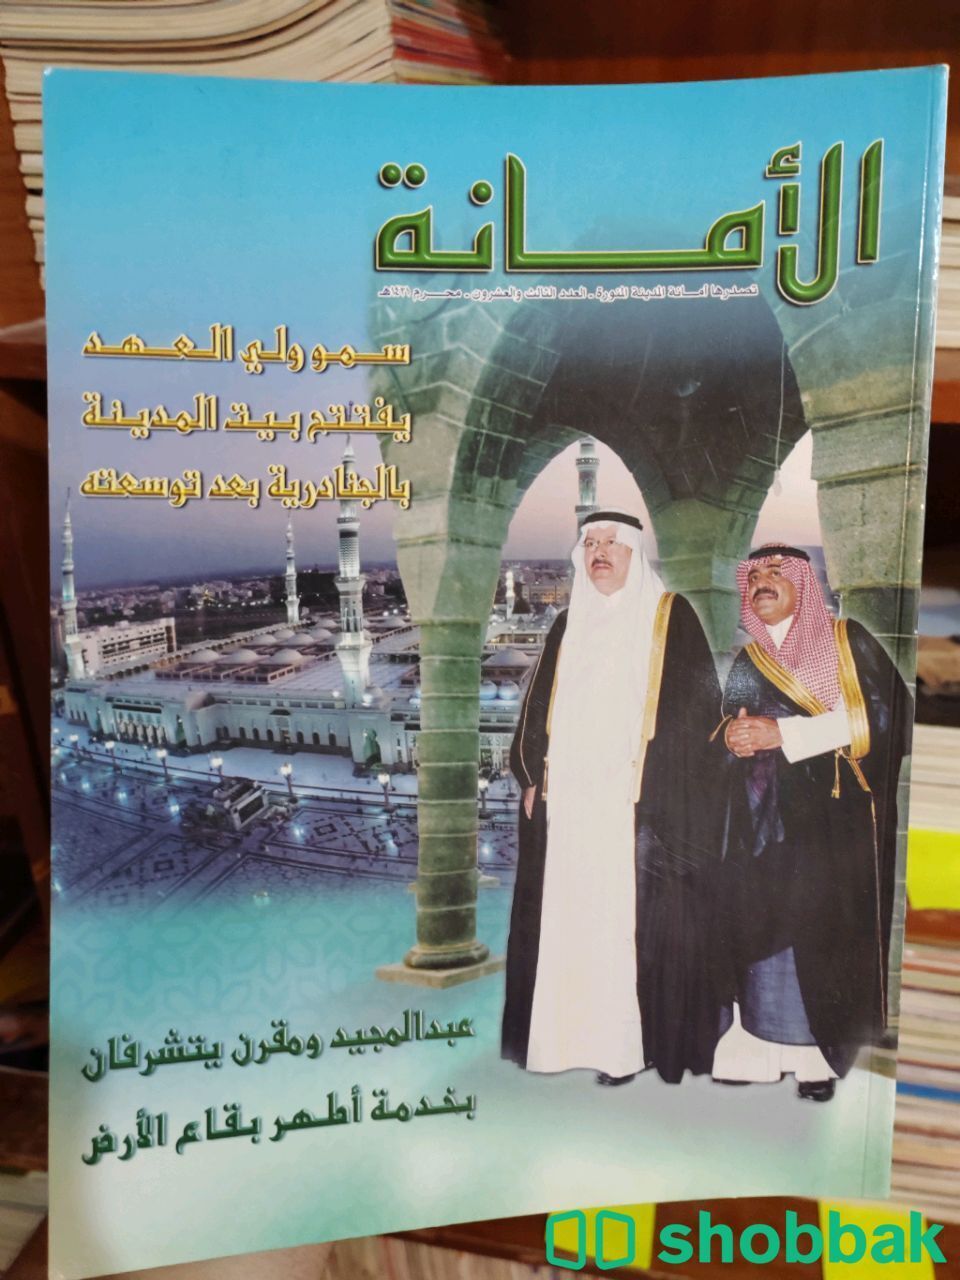 كتب قديمة بحالة ممتازة  Shobbak Saudi Arabia